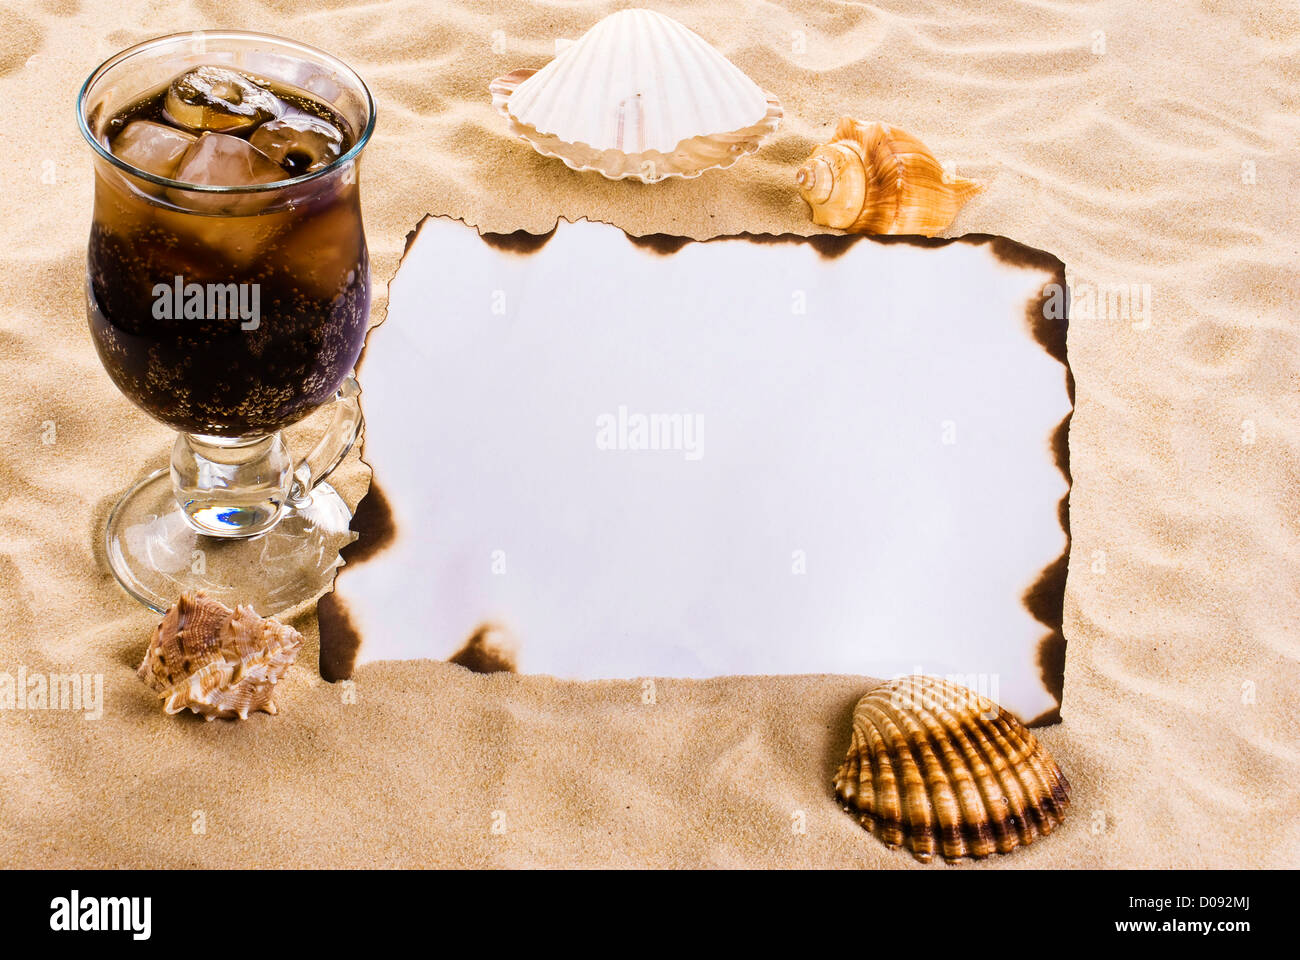 Verbrannten Papier auf dem Sand mit Muscheln und Eis Kaltgetränk Stockfoto